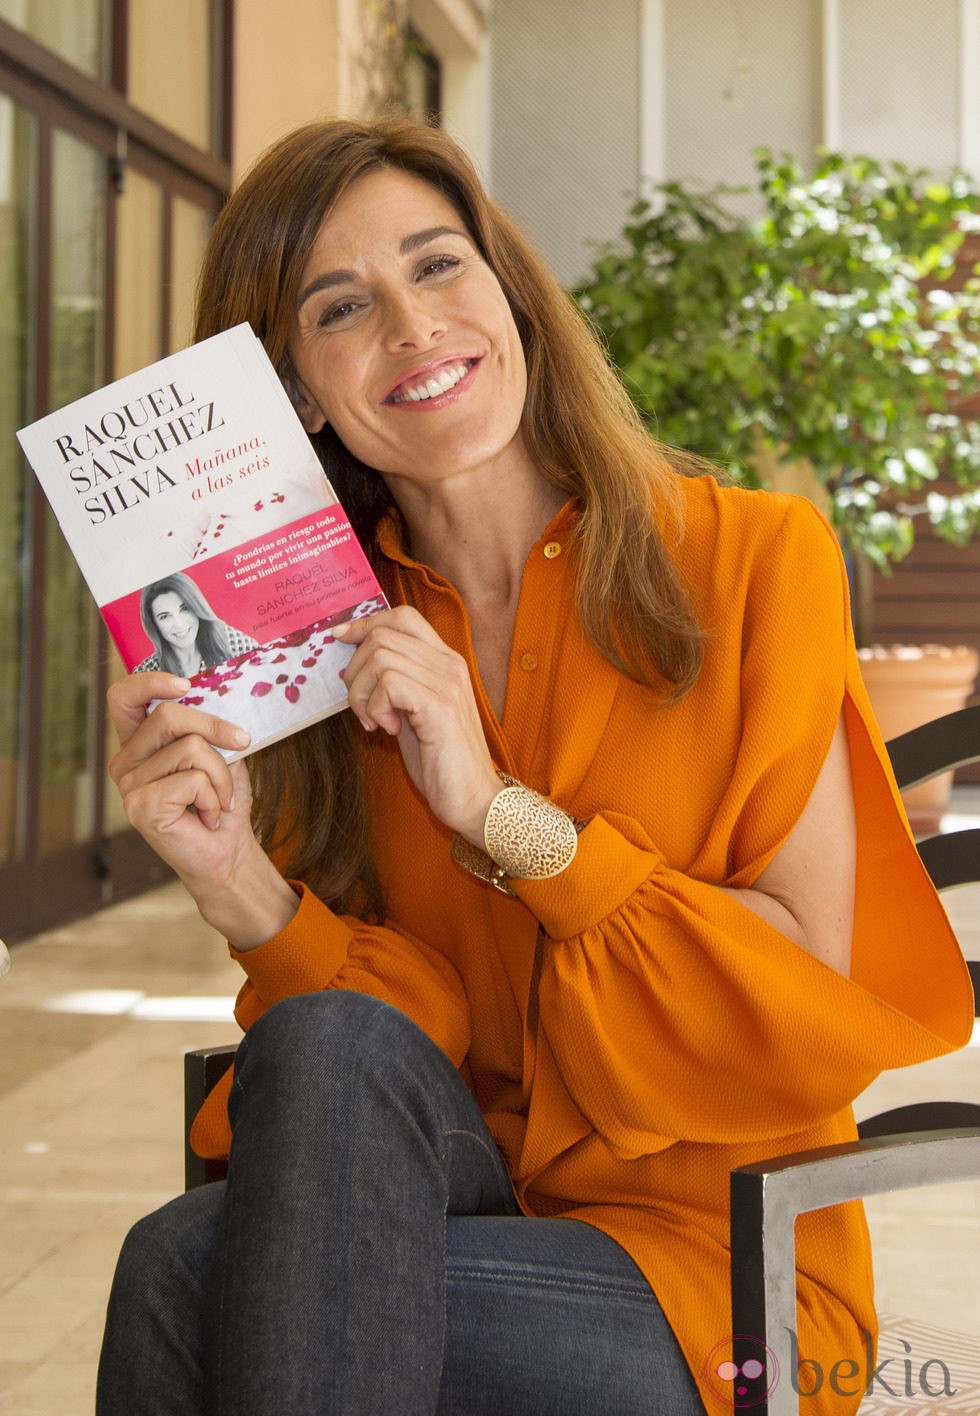 Raquel Sánchez Silva posa orgullosa con un ejemplar de su primera novela